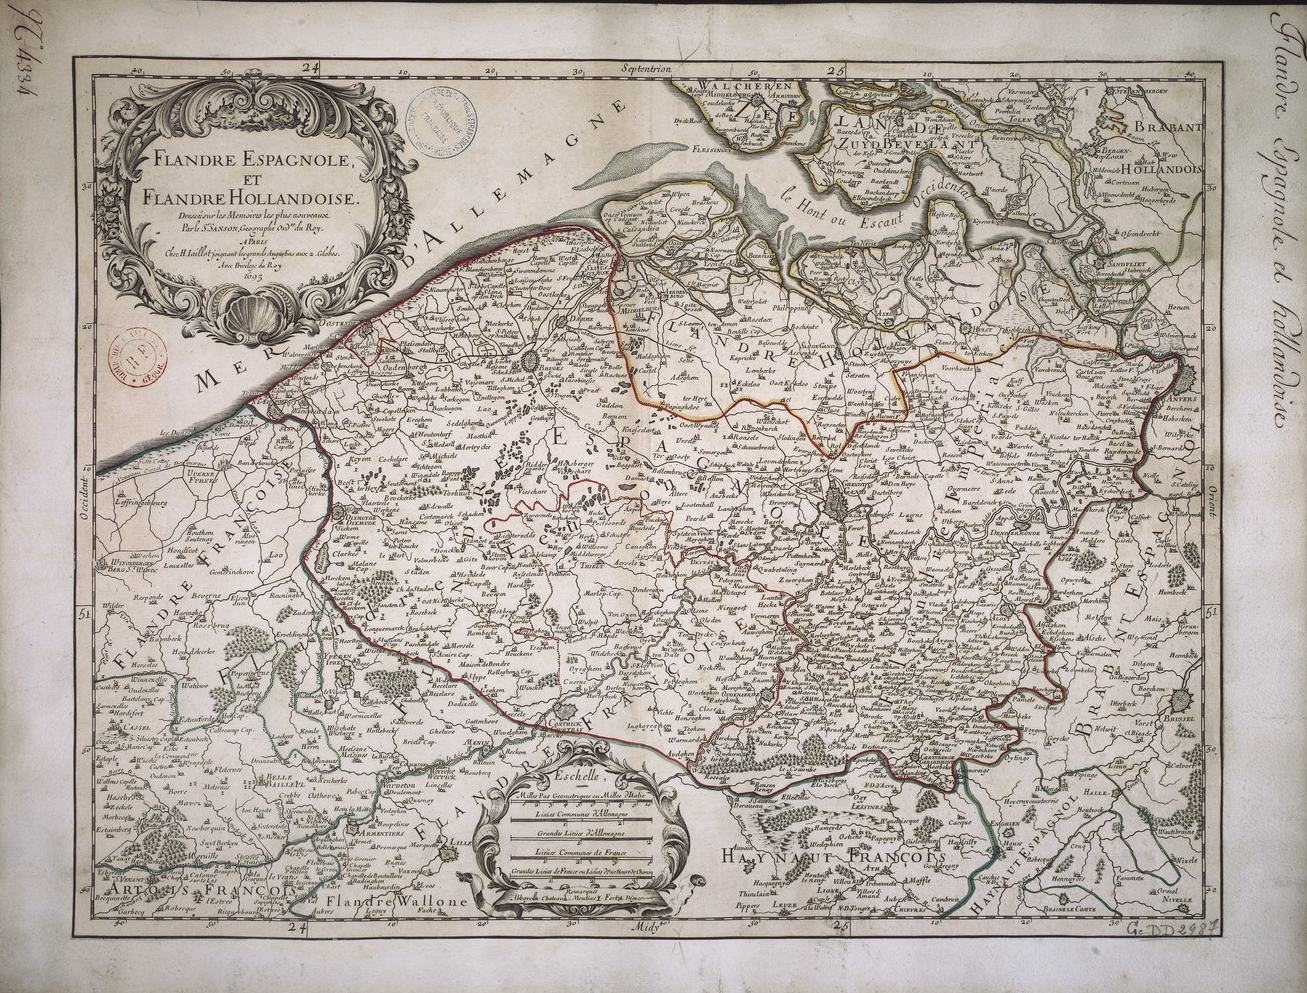 Mapa de Flandes después de la independencia de las provincies del norte. Cartografiado en París (1693). Fuente Bibliothèque National de France (1)